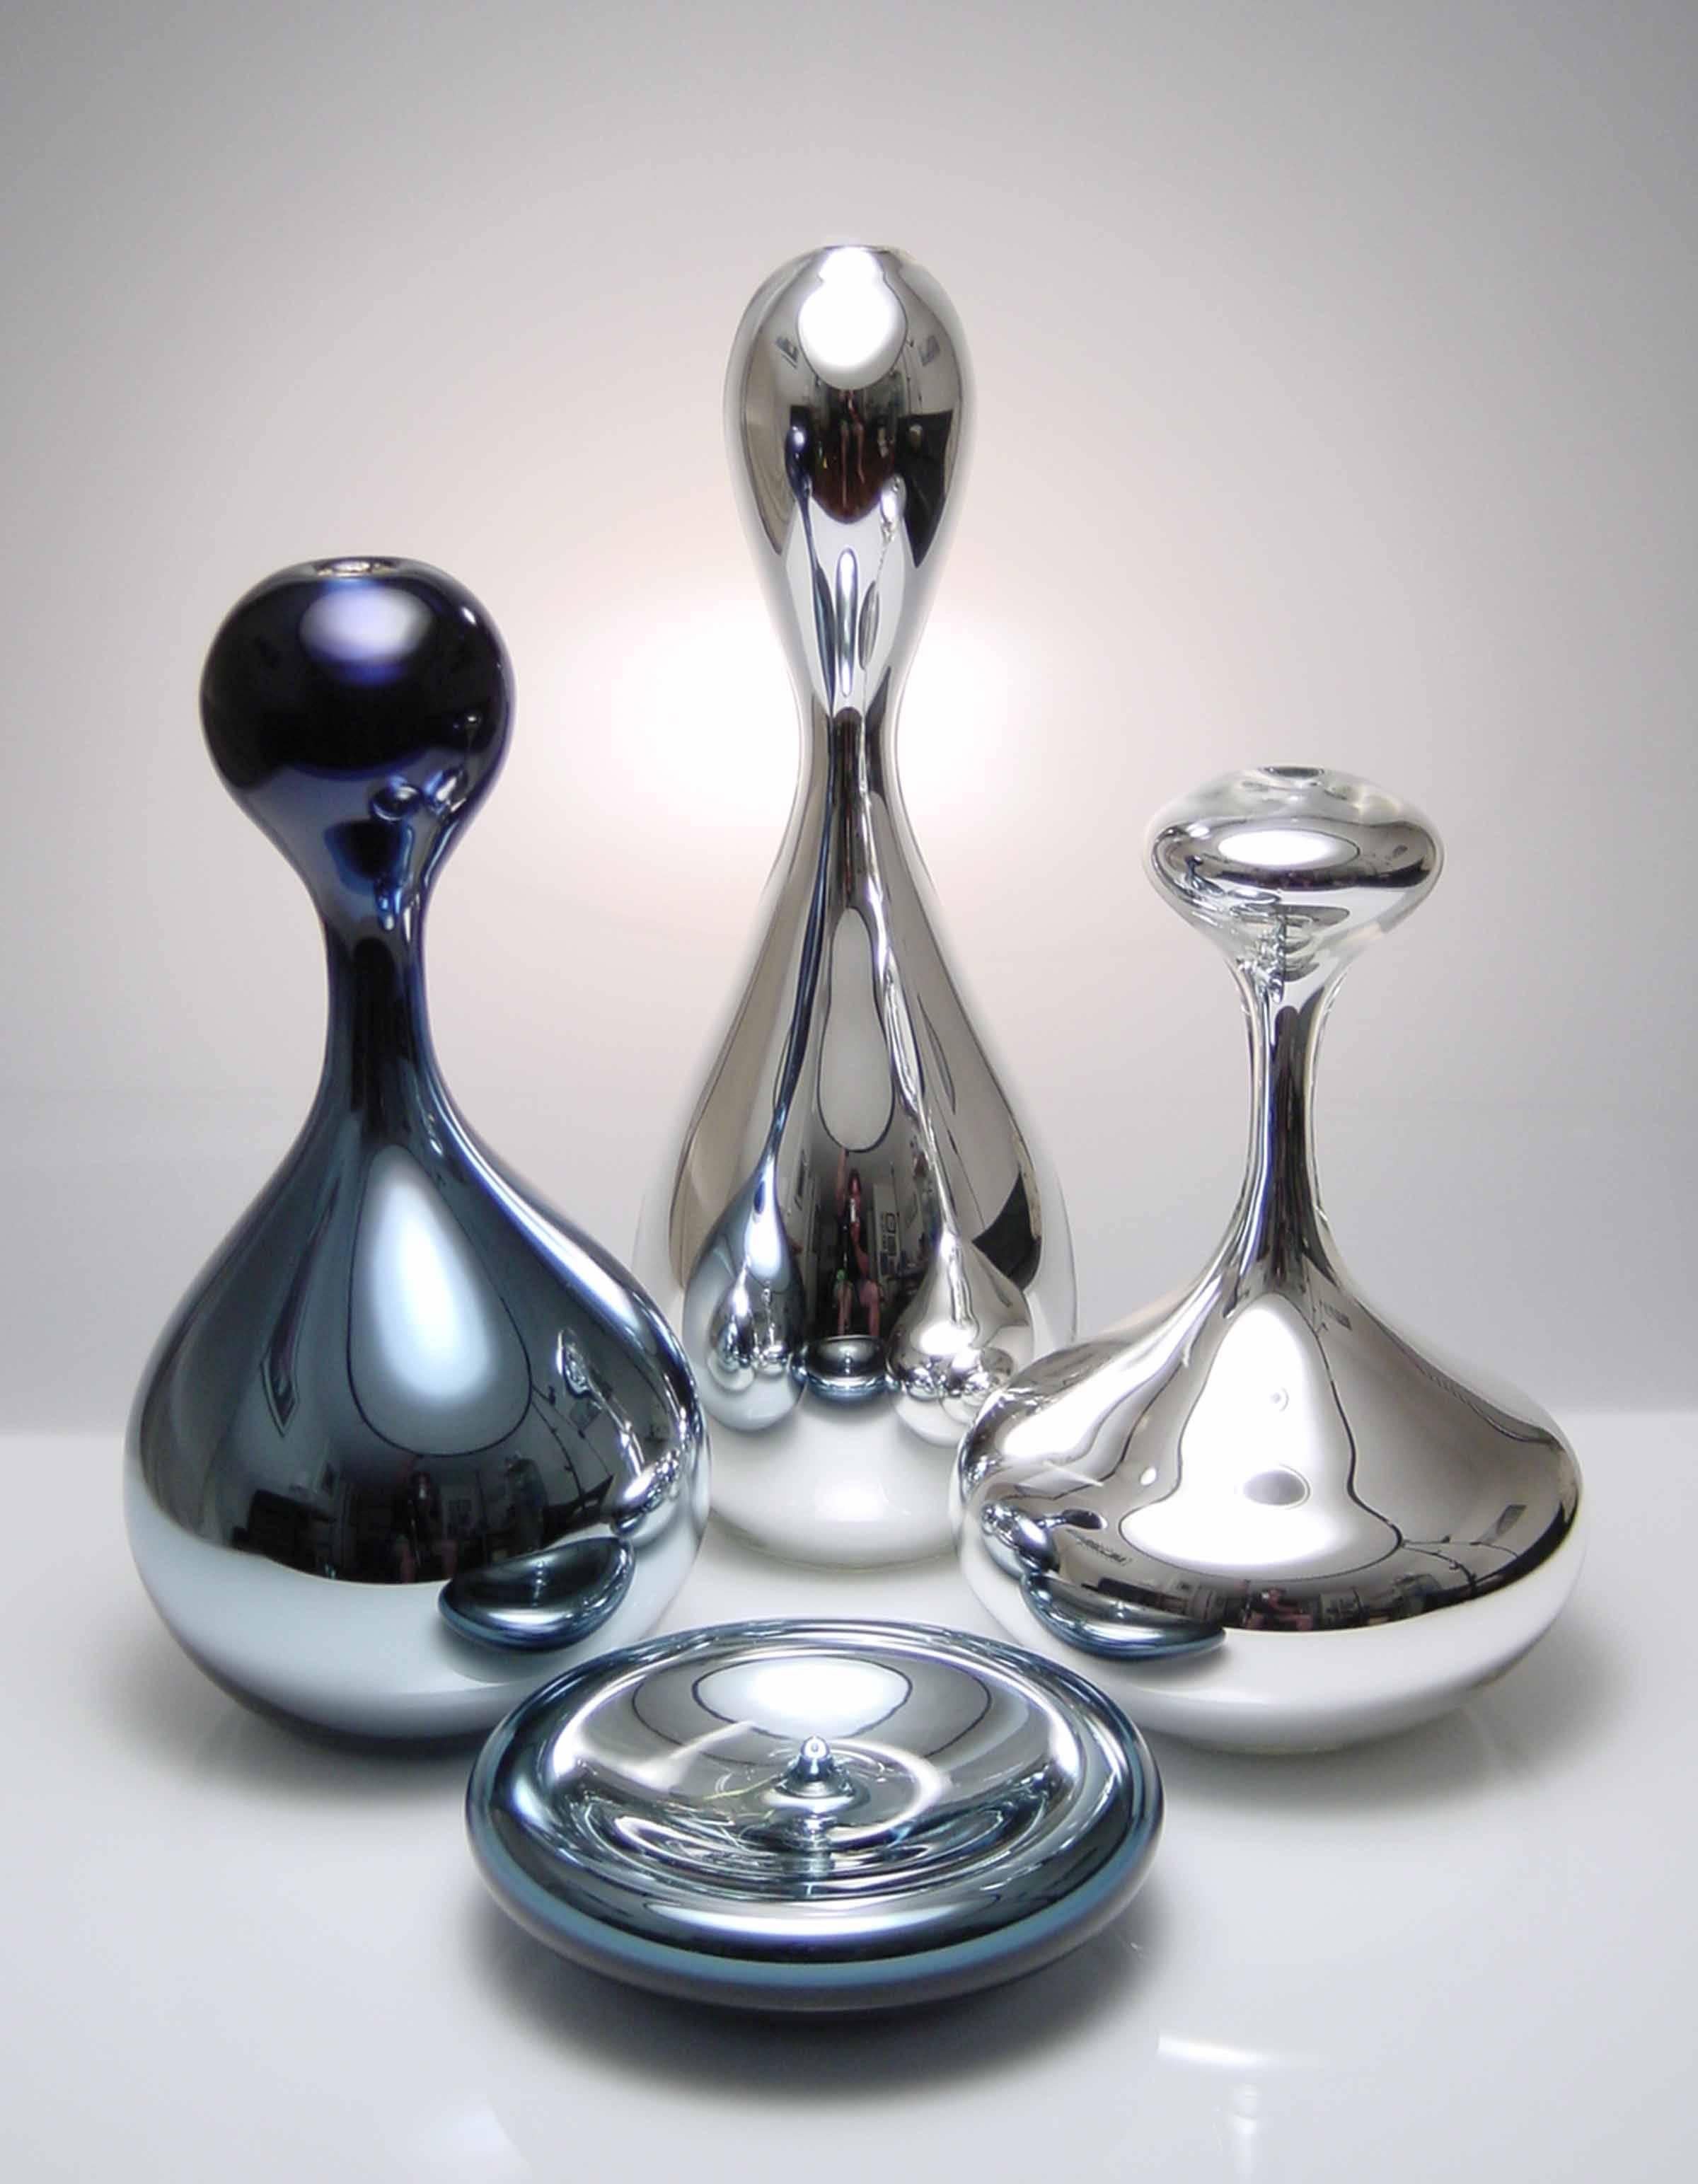 Die Mercury-Serie besteht aus mundgeblasenen Glasgefäßen mit verspiegelter Innenseite. Das Set aus handgefertigten Gefäßen soll die verschiedenen Stadien der Abscheidung eines Quecksilbertropfens nachahmen und besteht aus vier Teilen mit